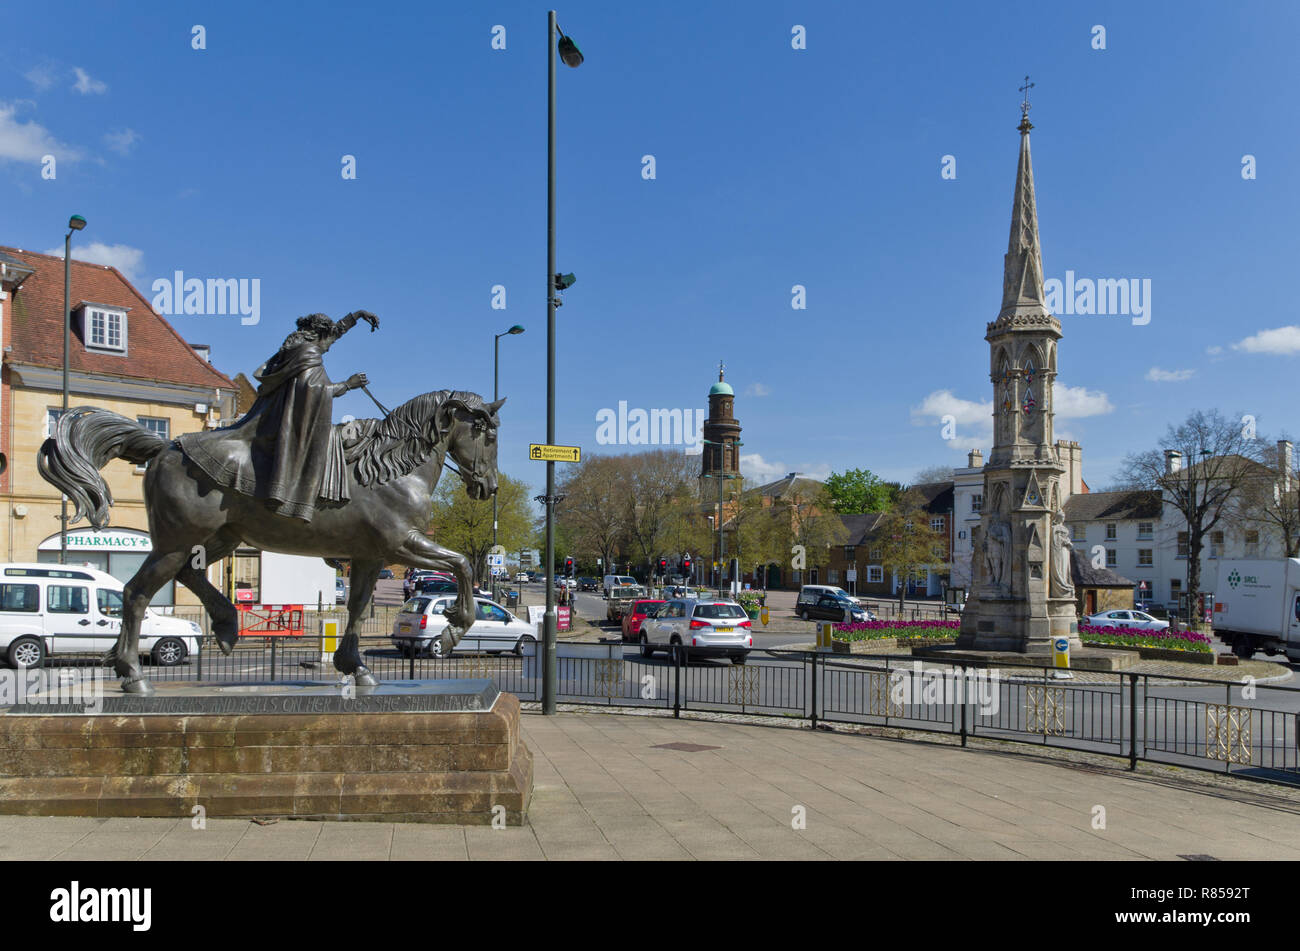 Tre icone di Banbury - la Bella Signora statua, Banbury Cross e al centro la torre della chiesa di St Mary; Oxfordshire, Regno Unito Foto Stock